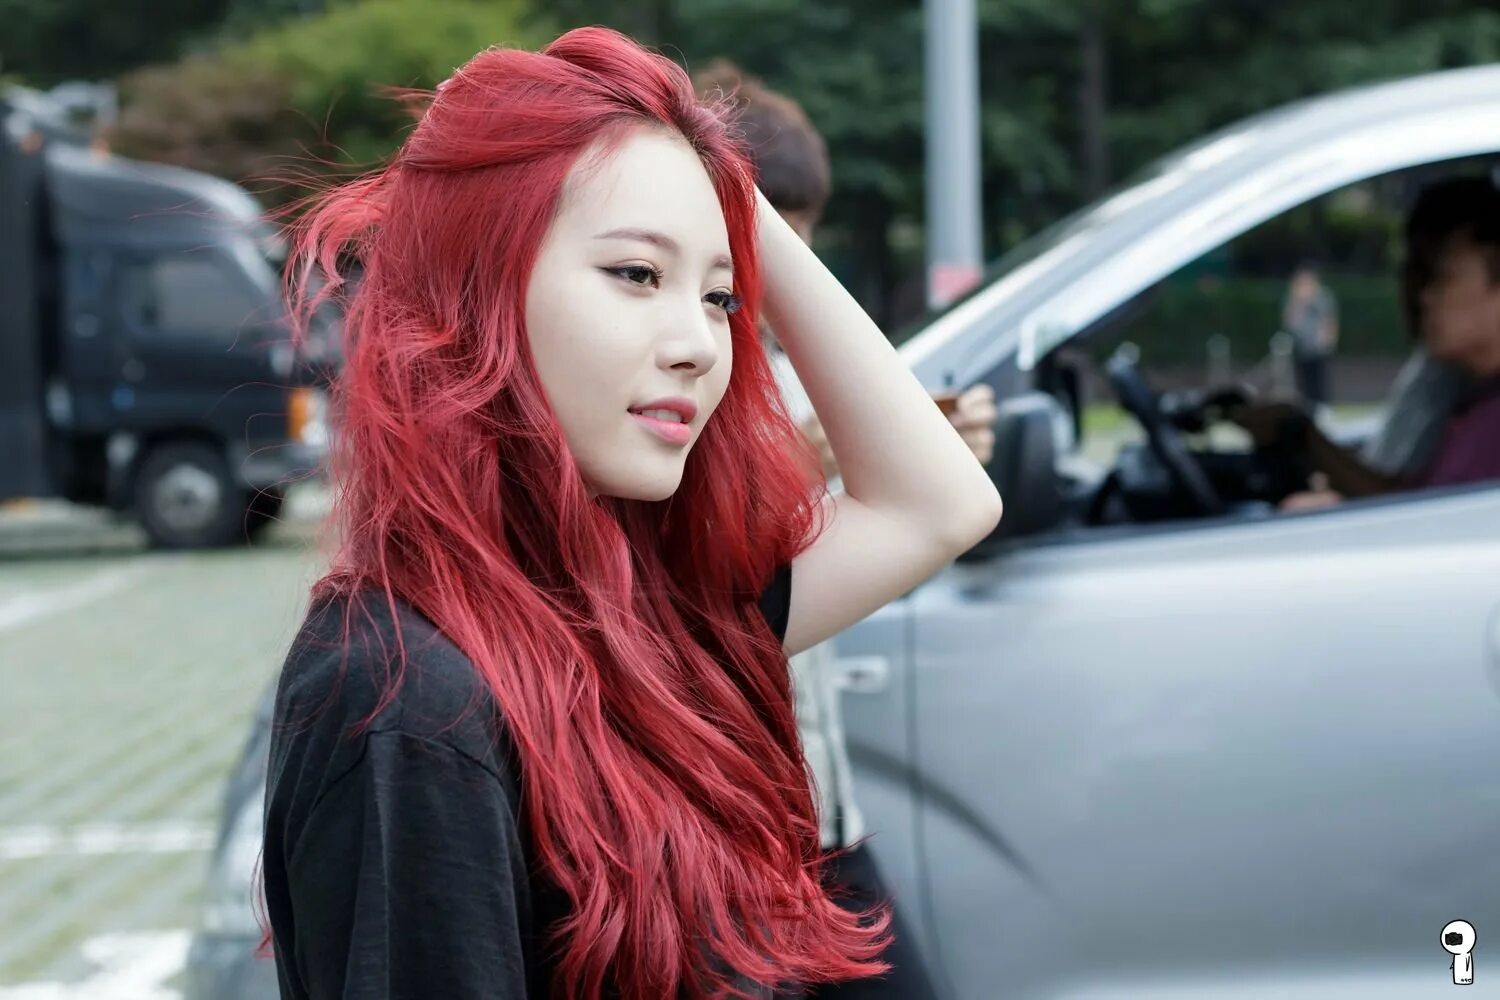 Дженни с красными волосами. Кореянка с красными волосами. Девушка с красными волосами. Красивые девушки с красными волосами.